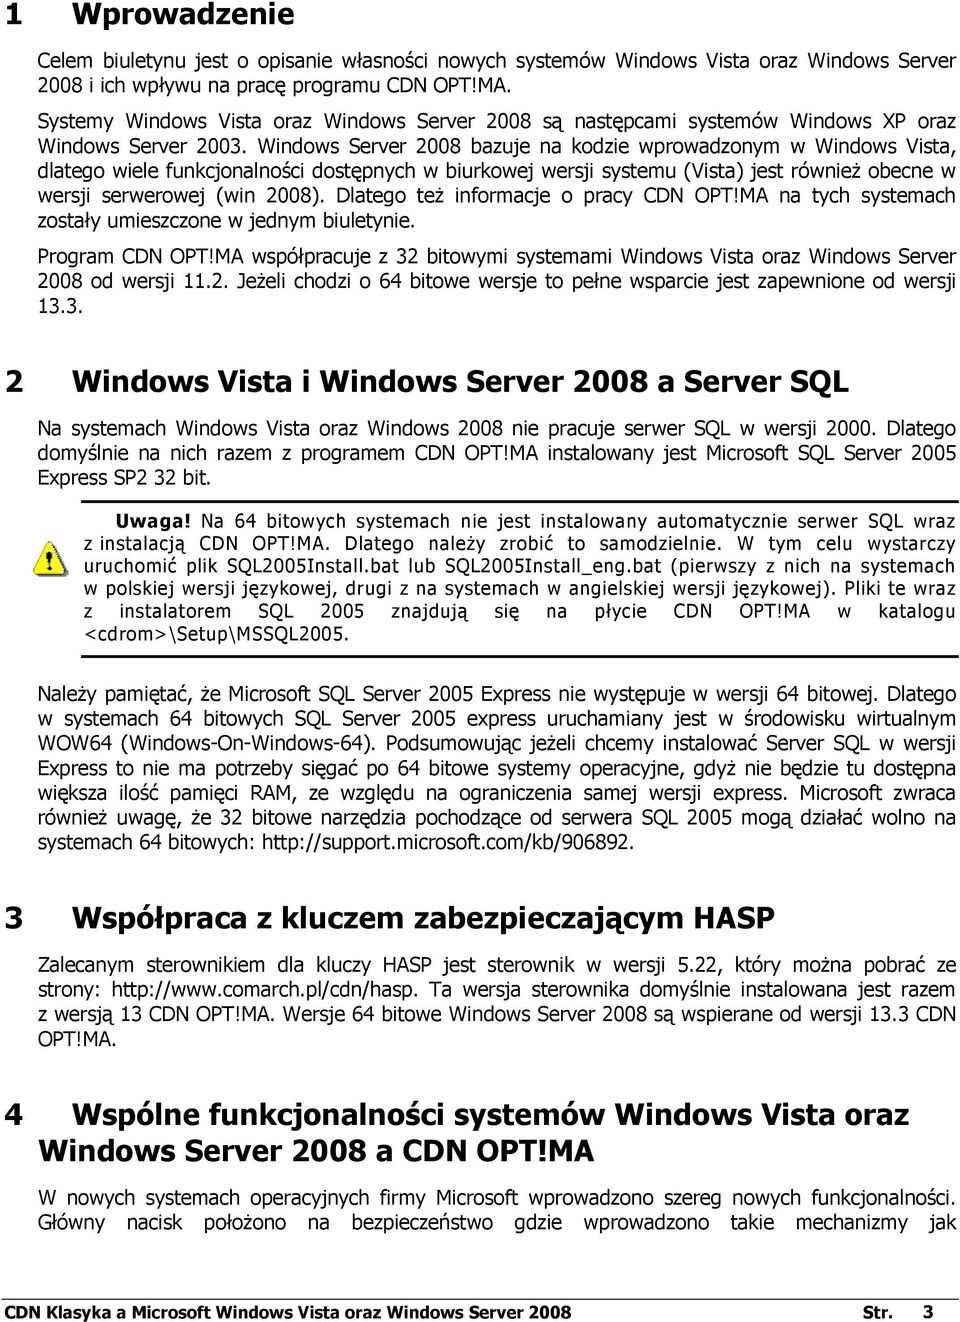 Windows Server 2008 bazuje na kodzie wprowadzonym w Windows Vista, dlatego wiele funkcjonalności dostępnych w biurkowej wersji systemu (Vista) jest równieŝ obecne w wersji serwerowej (win 2008).